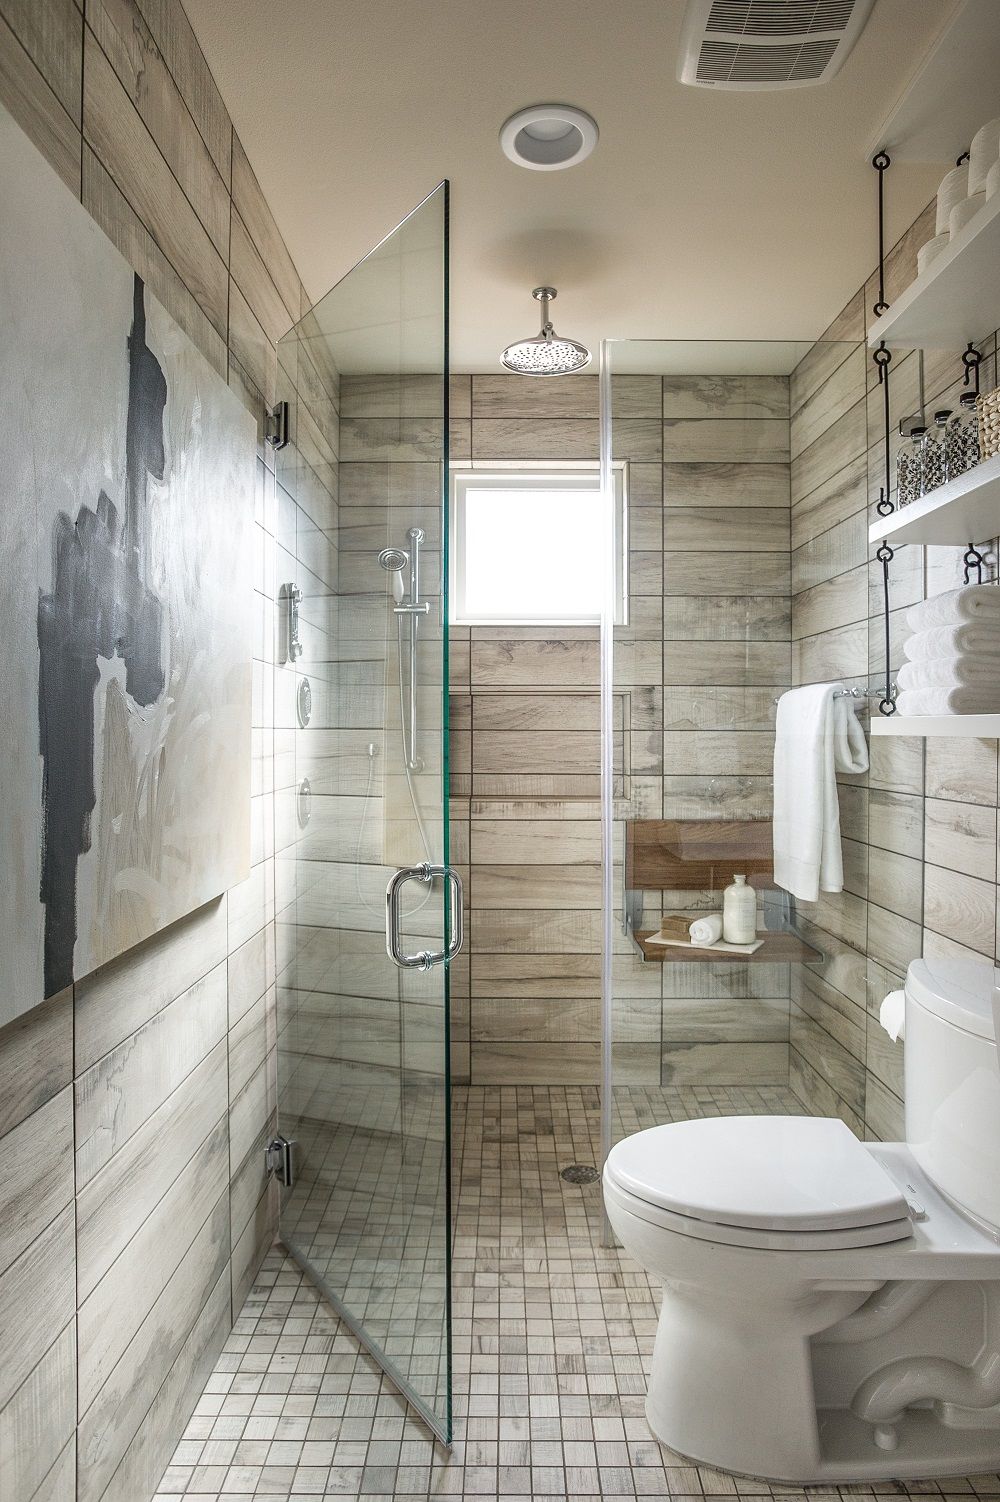 Nguyên tắc thiết kế phòng tắm nhỏ đẹp đến từ chúng tôi sẽ giúp bạn tạo ra một không gian tắm tuy nhỏ nhưng vô cùng tiện nghi và sang trọng. Chúng tôi hiểu rõ rằng thiết kế phòng tắm tốt là sự kết hợp hoàn hảo giữa tính thẩm mỹ và tính hữu dụng. Đó chính là tư duy thiết kế của chúng tôi.